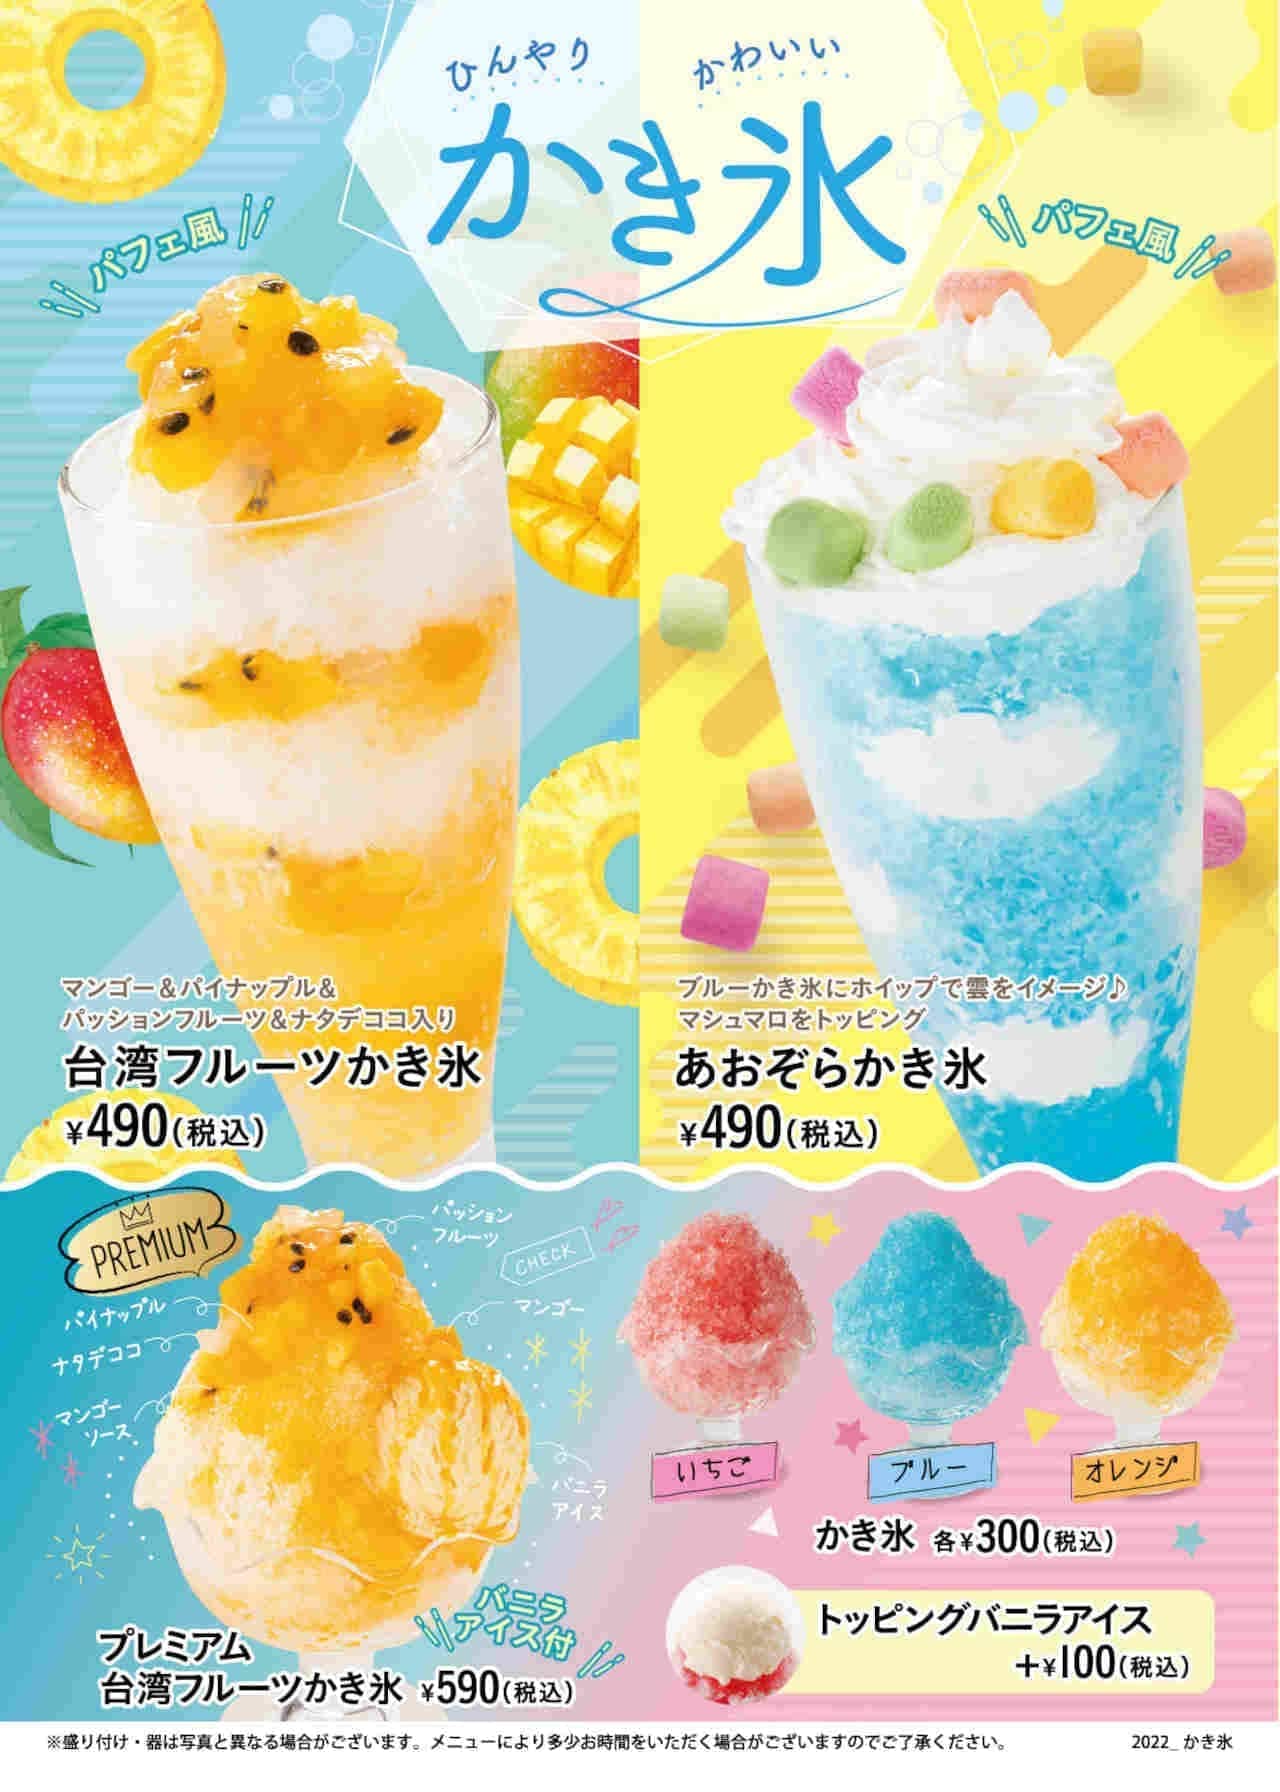 Big Echo "Taiwan Fruit Shaved Ice," "Aozora Shaved Ice," "Premium Taiwan Fruit Shaved Ice